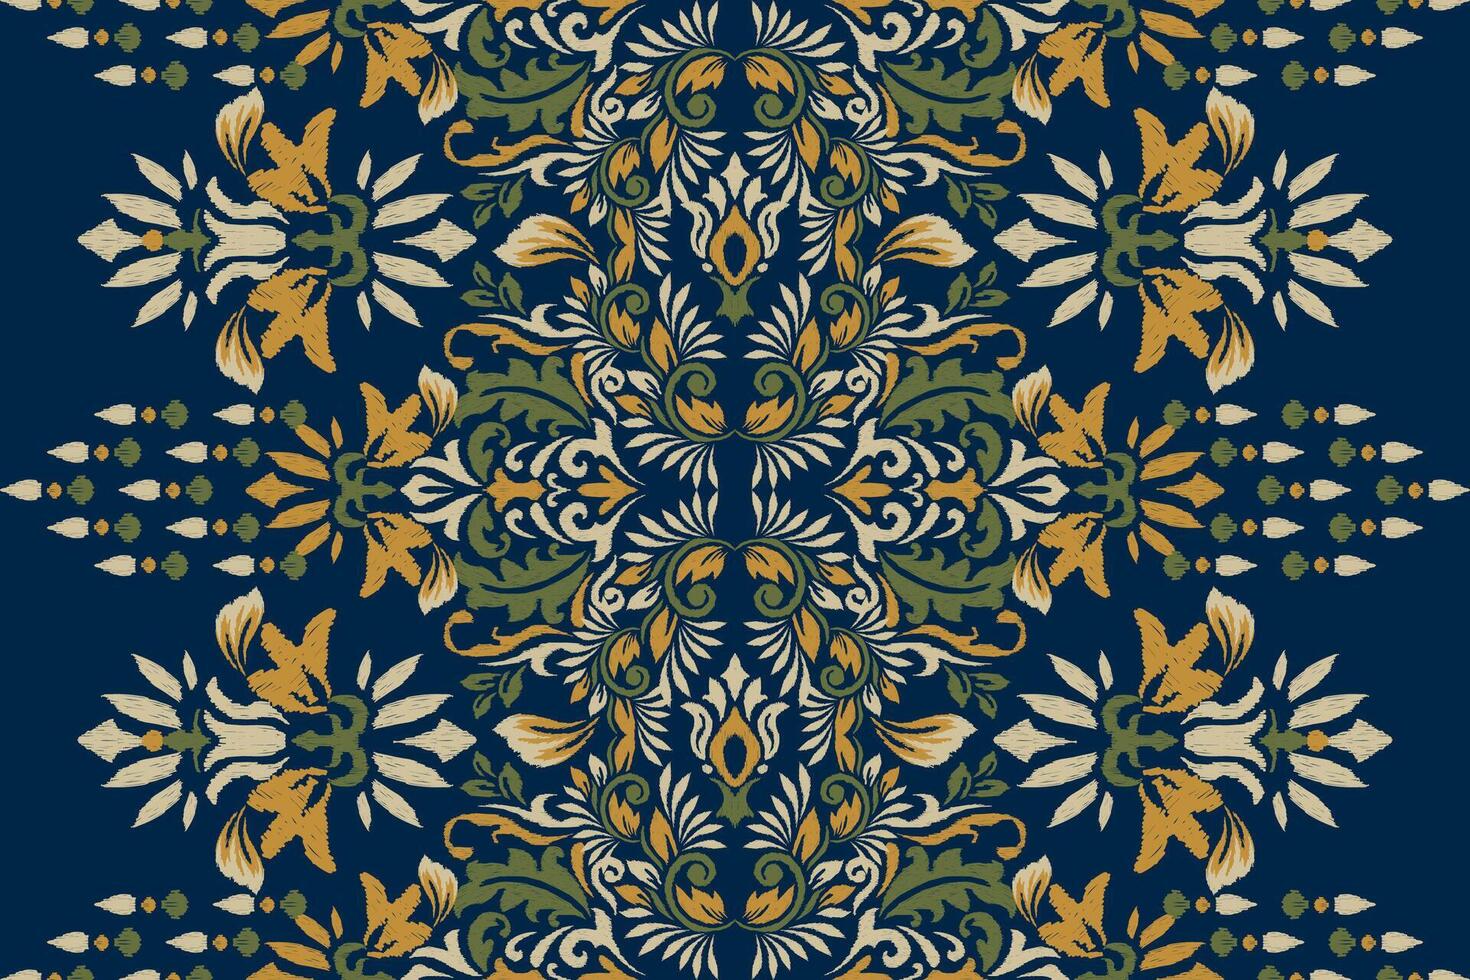 arabesco ikat floreale modello su Marina Militare blu sfondo.ikat etnico orientale ricamo vettore illustrazione, azteco stile, astratto sfondo.design per trama, tessuto, abbigliamento, avvolgimento, decorazione, sciarpa.